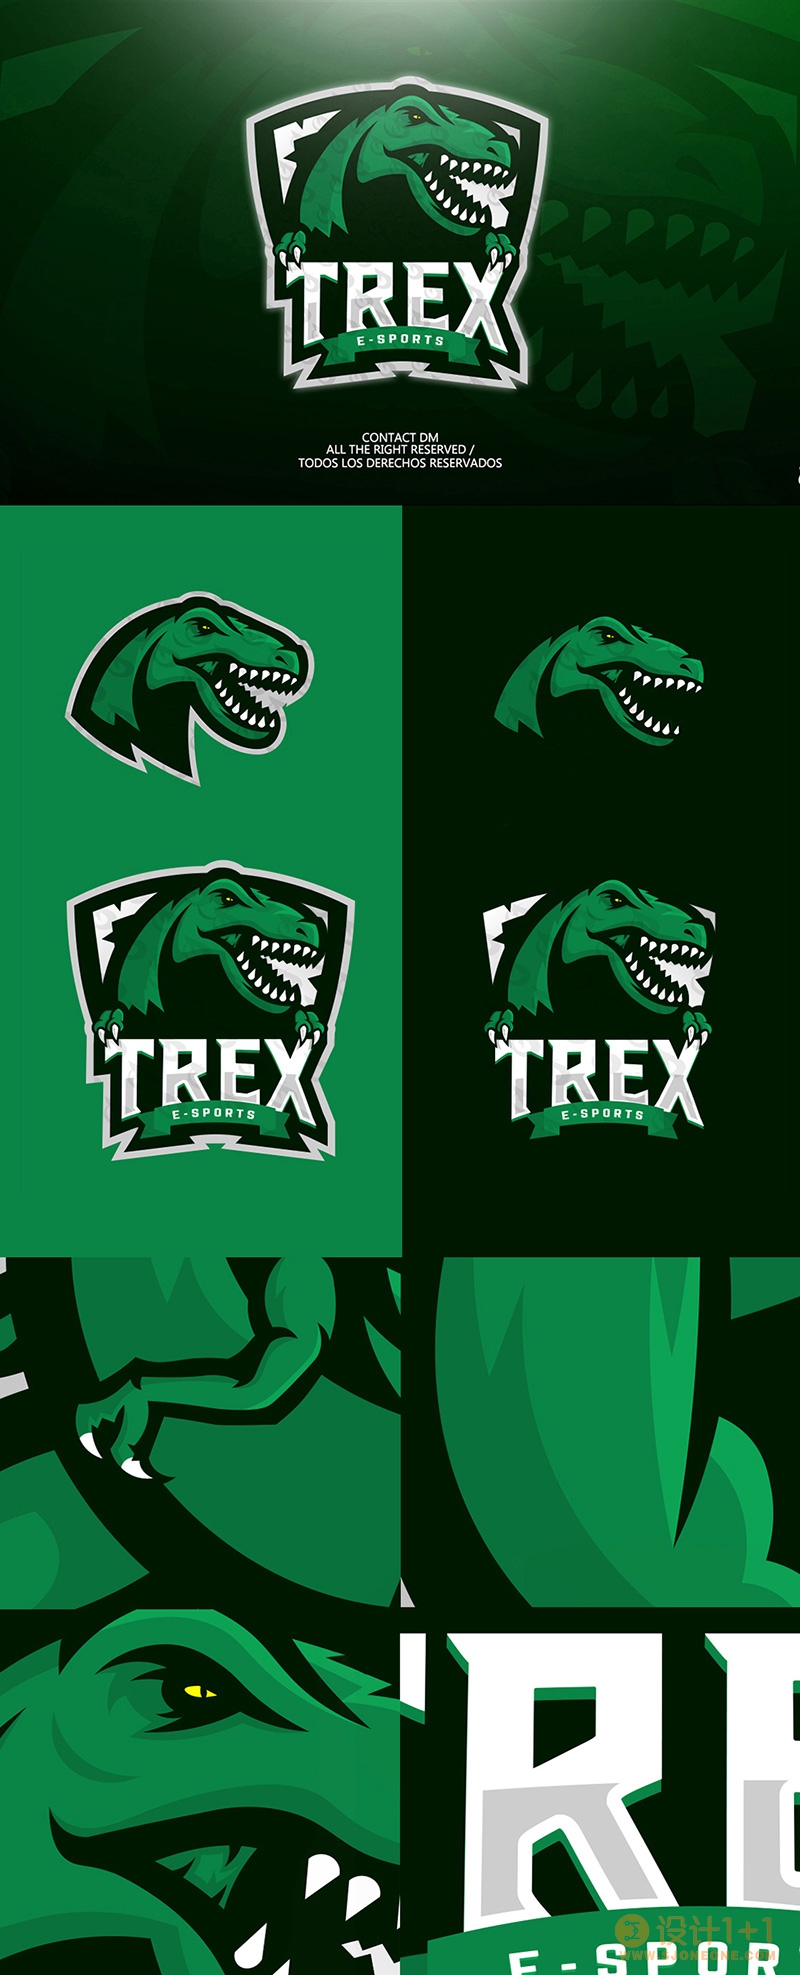 标志设计元素应用实例：恐龙(二)